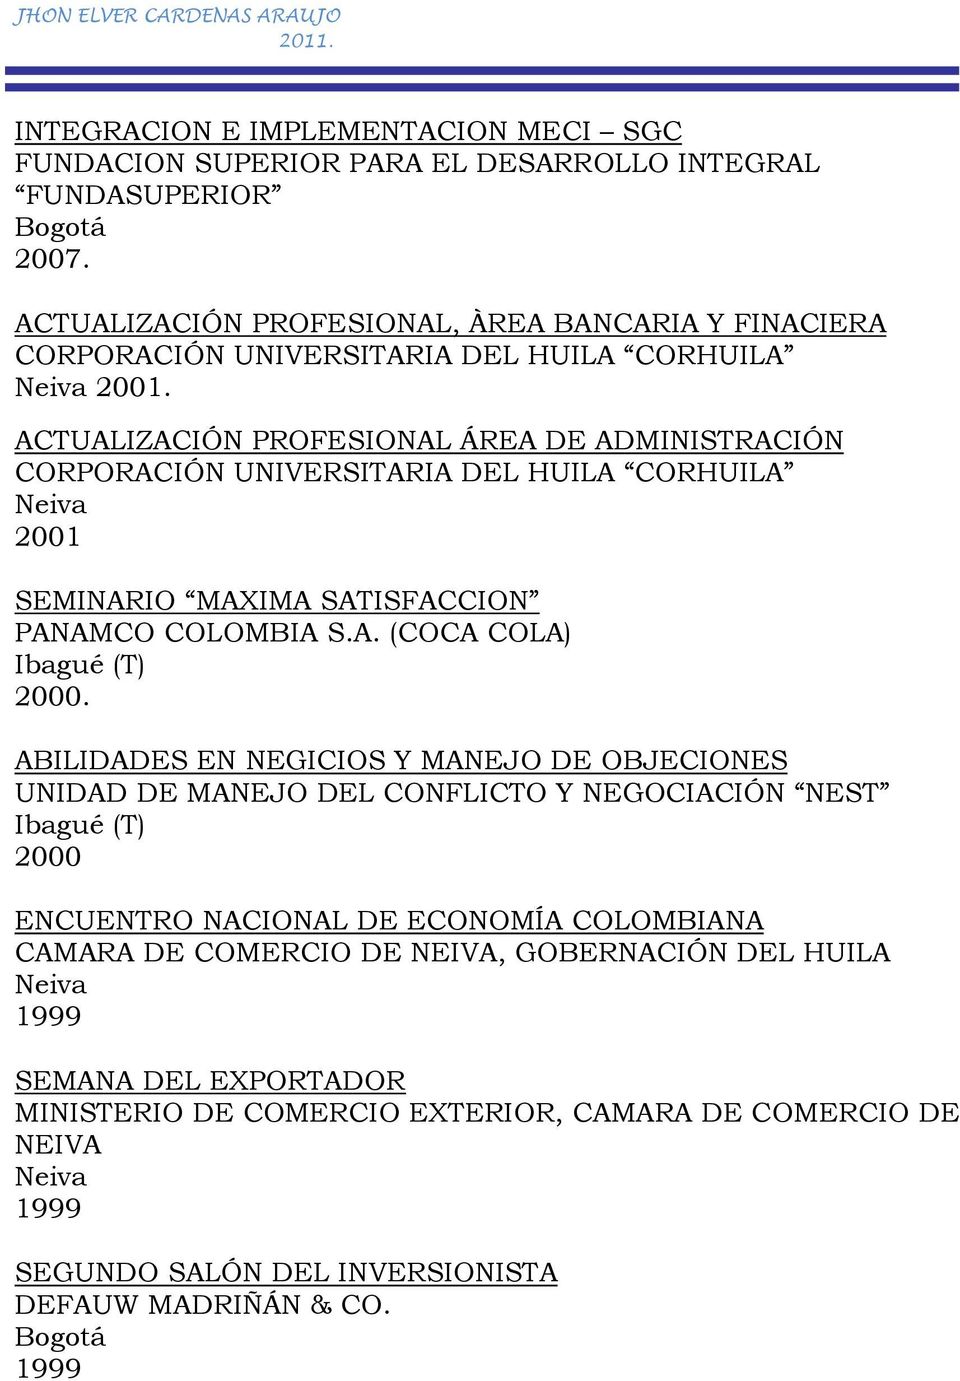 ACTUALIZACIÓN PROFESIONAL ÁREA DE ADMINISTRACIÓN CORPORACIÓN UNIVERSITARIA DEL HUILA CORHUILA 2001 SEMINARIO MAXIMA SATISFACCION PANAMCO COLOMBIA S.A. (COCA COLA) Ibagué (T) 2000.